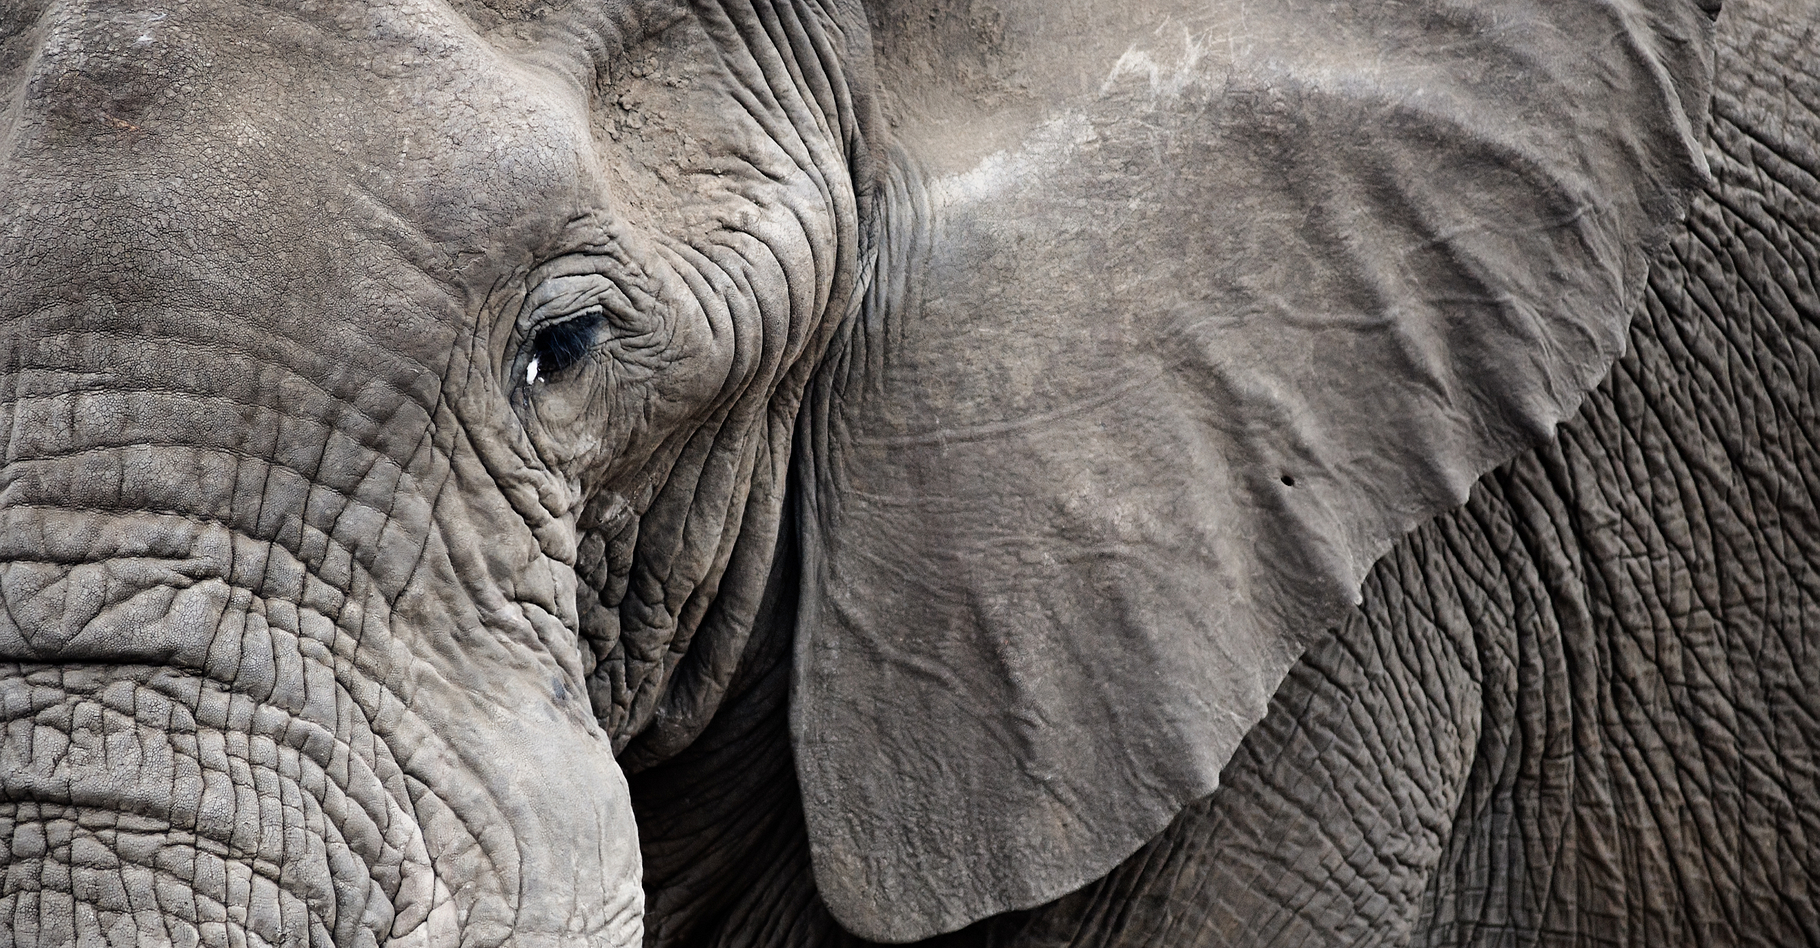 La perte de l’habitat naturel des éléphants représente une grande menace pour ces pachydermes. En ce qui concerne l'éléphant pygmée de Bornéo, il n'existerait plus que 1.500 individus (voir autre photo ci-dessous). © Daxiao Productions, Shutterstock